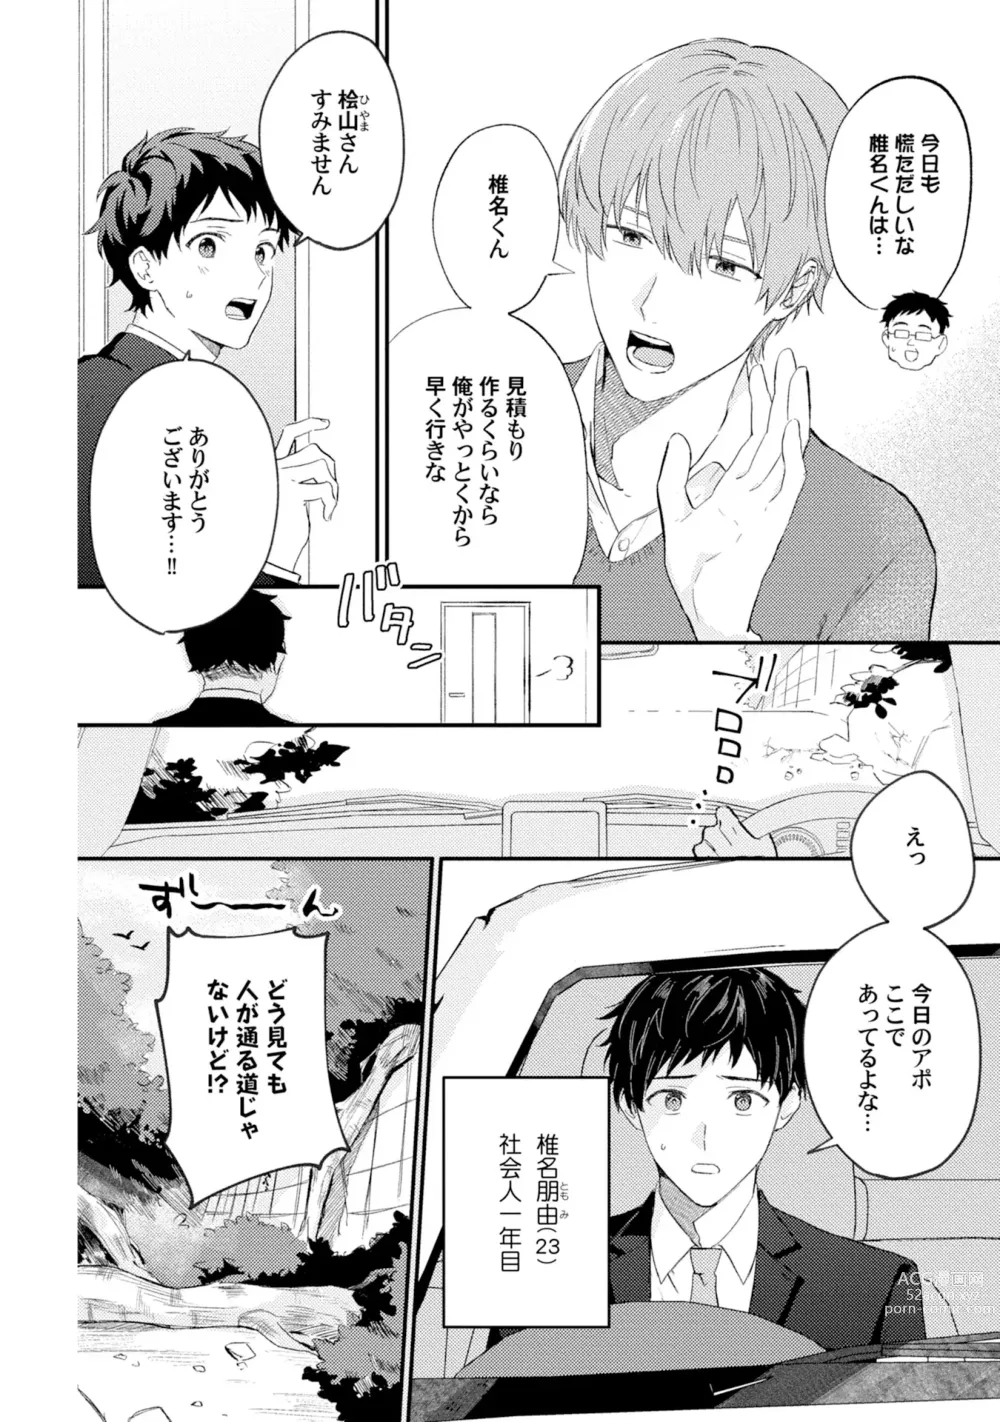 Page 6 of manga Akogare no Hito ni Ubawaremashita